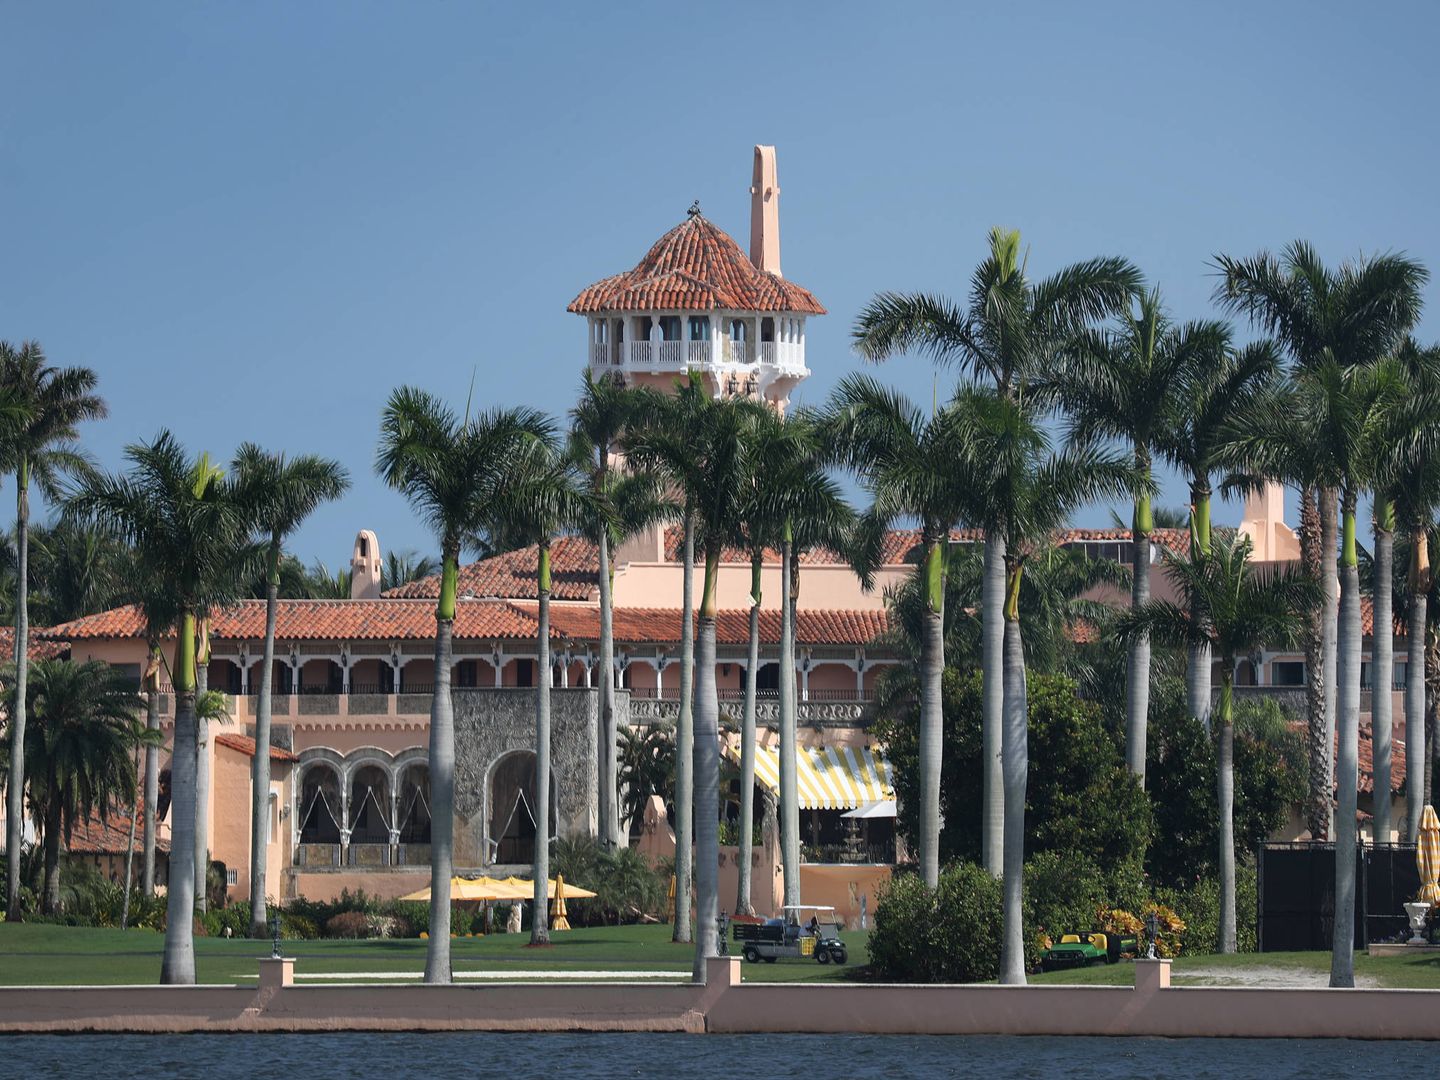  El resort Mar-a-Lago de Trump en Florida. (Getty)